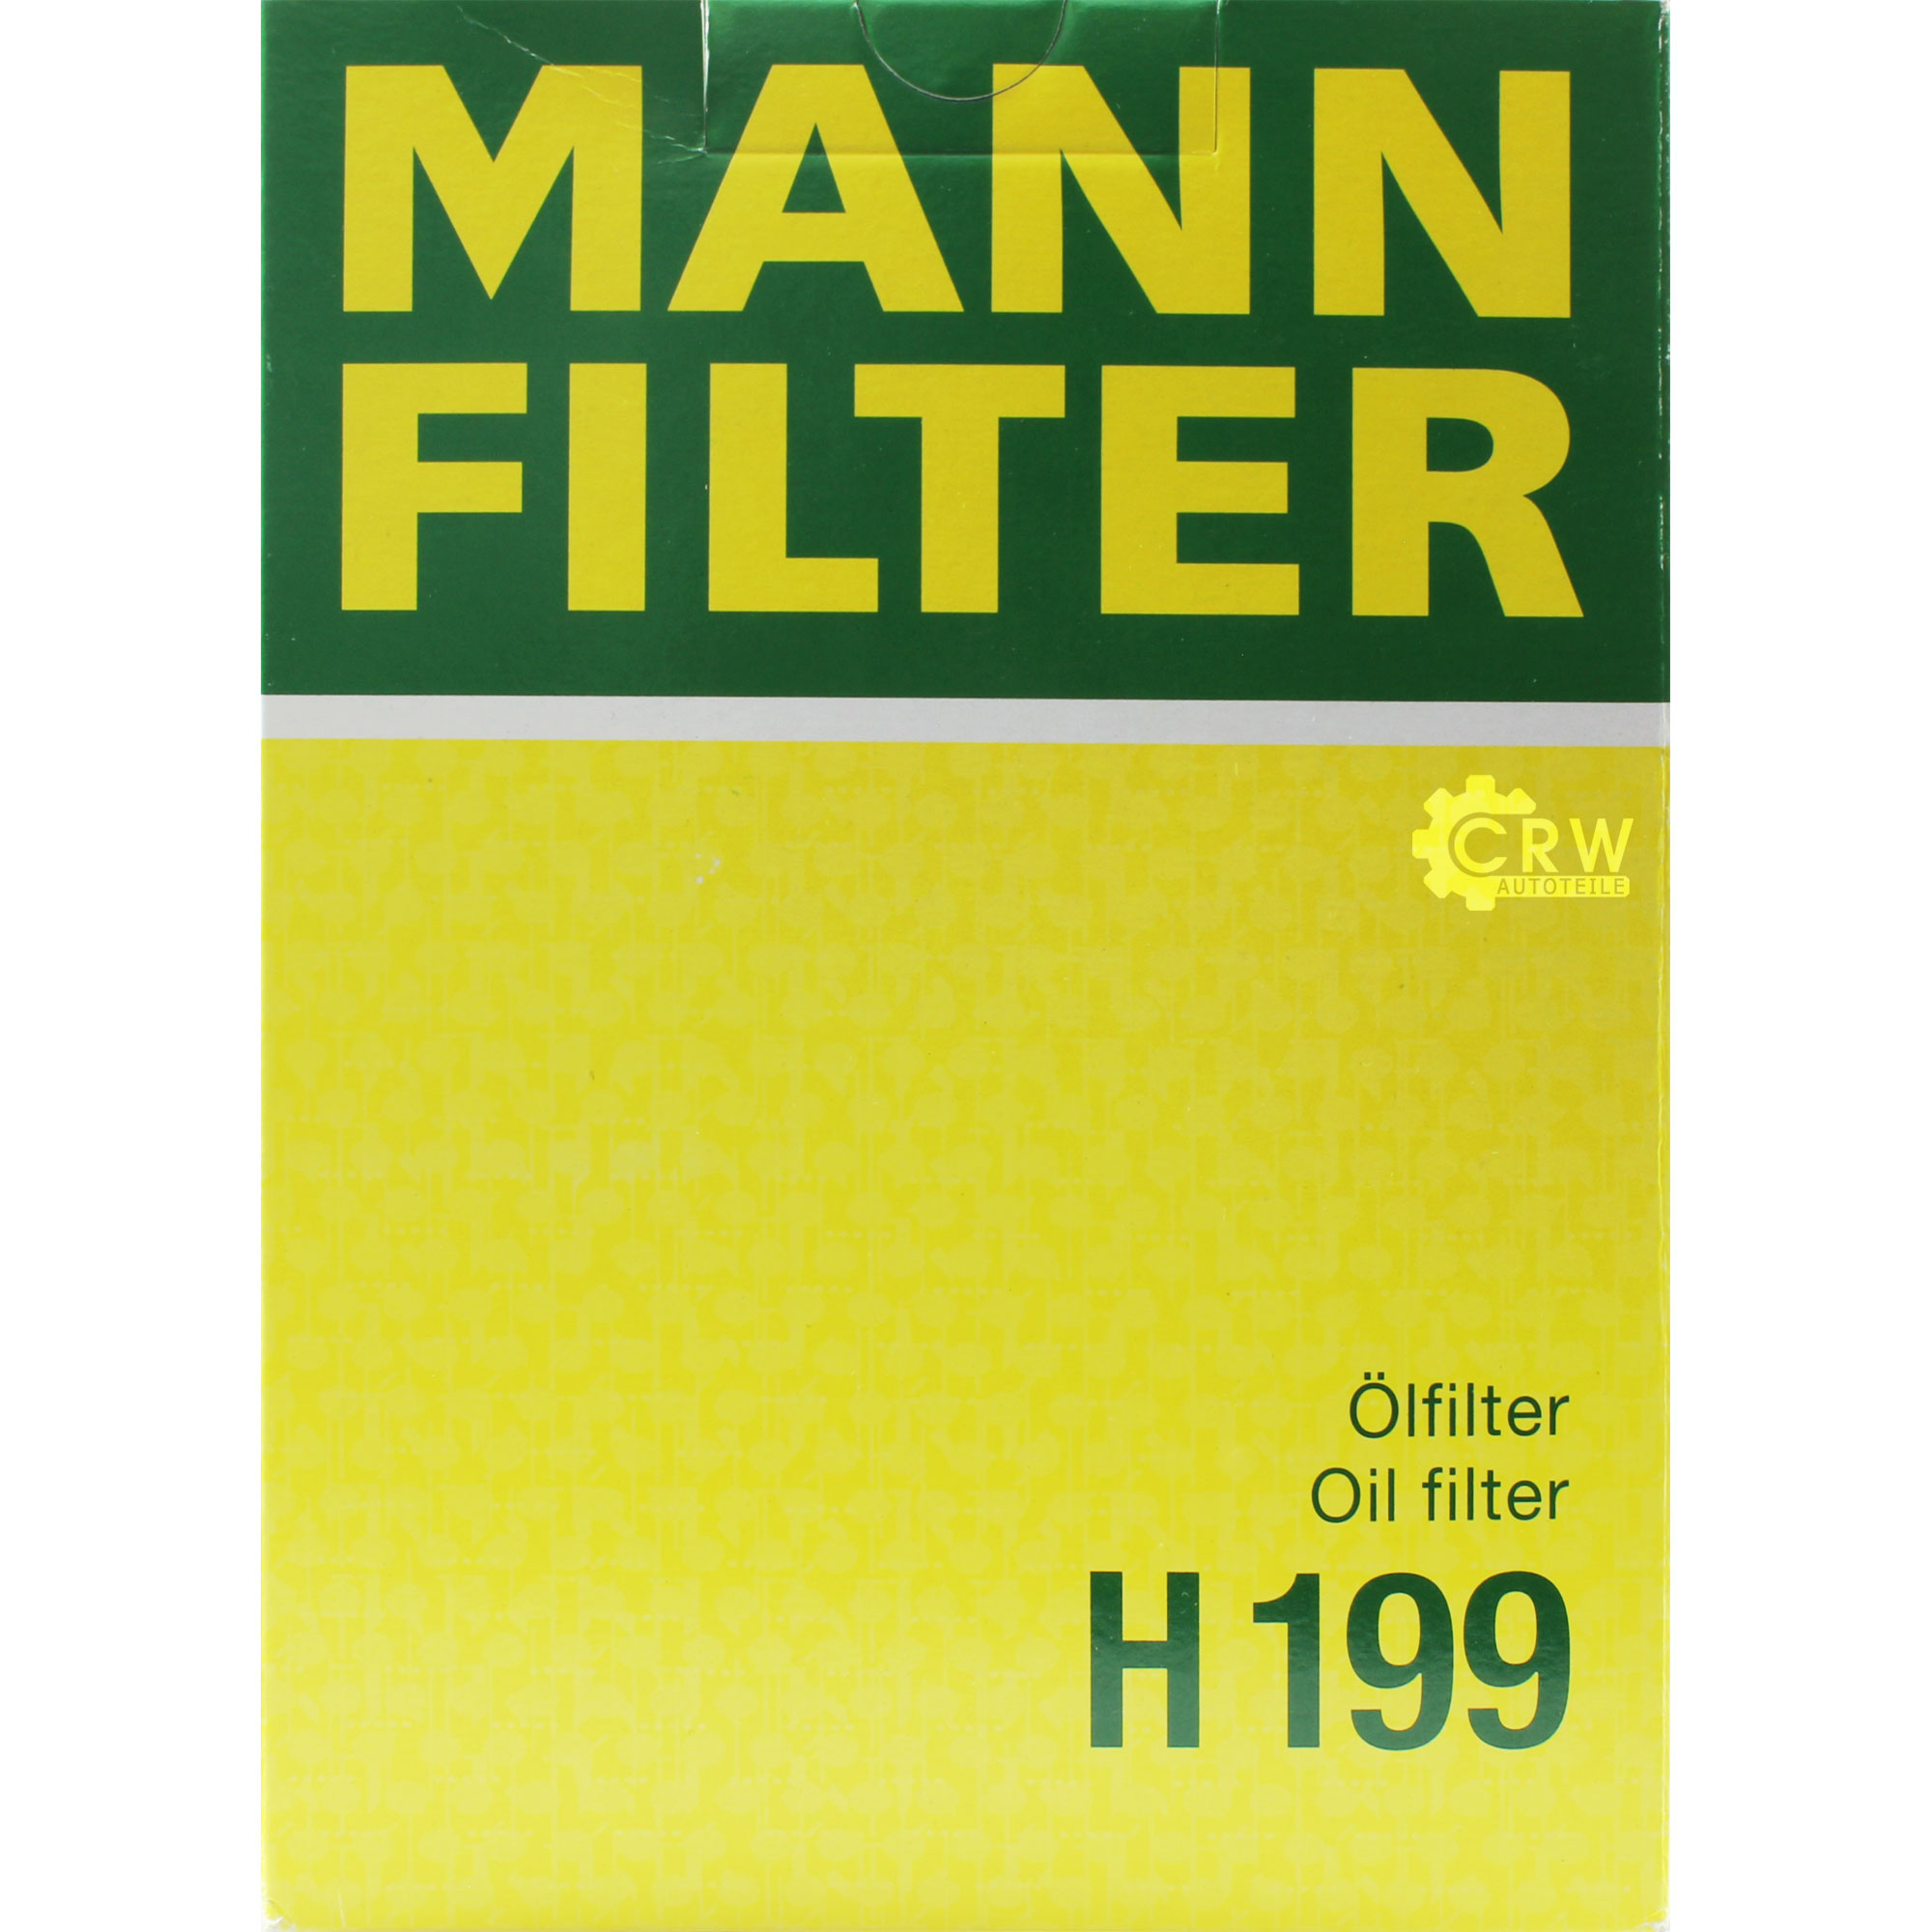 MANN-FILTER Getriebeölfilter für Automatikgetriebe H 199